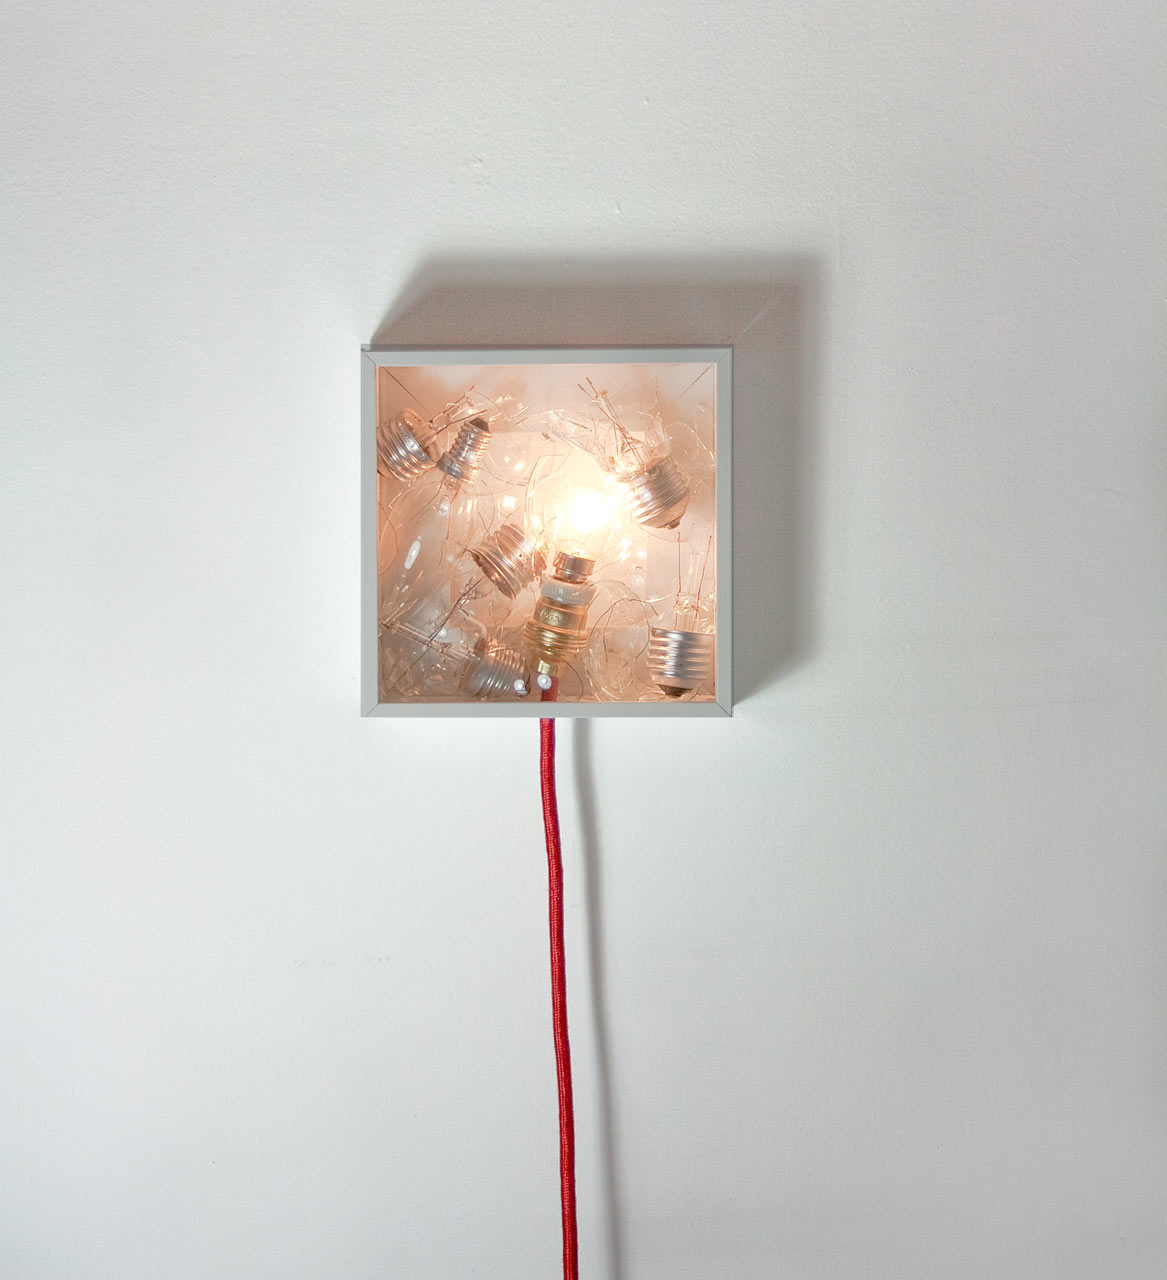 Bulbbox: A Lamp Made with a Box of Bulbs